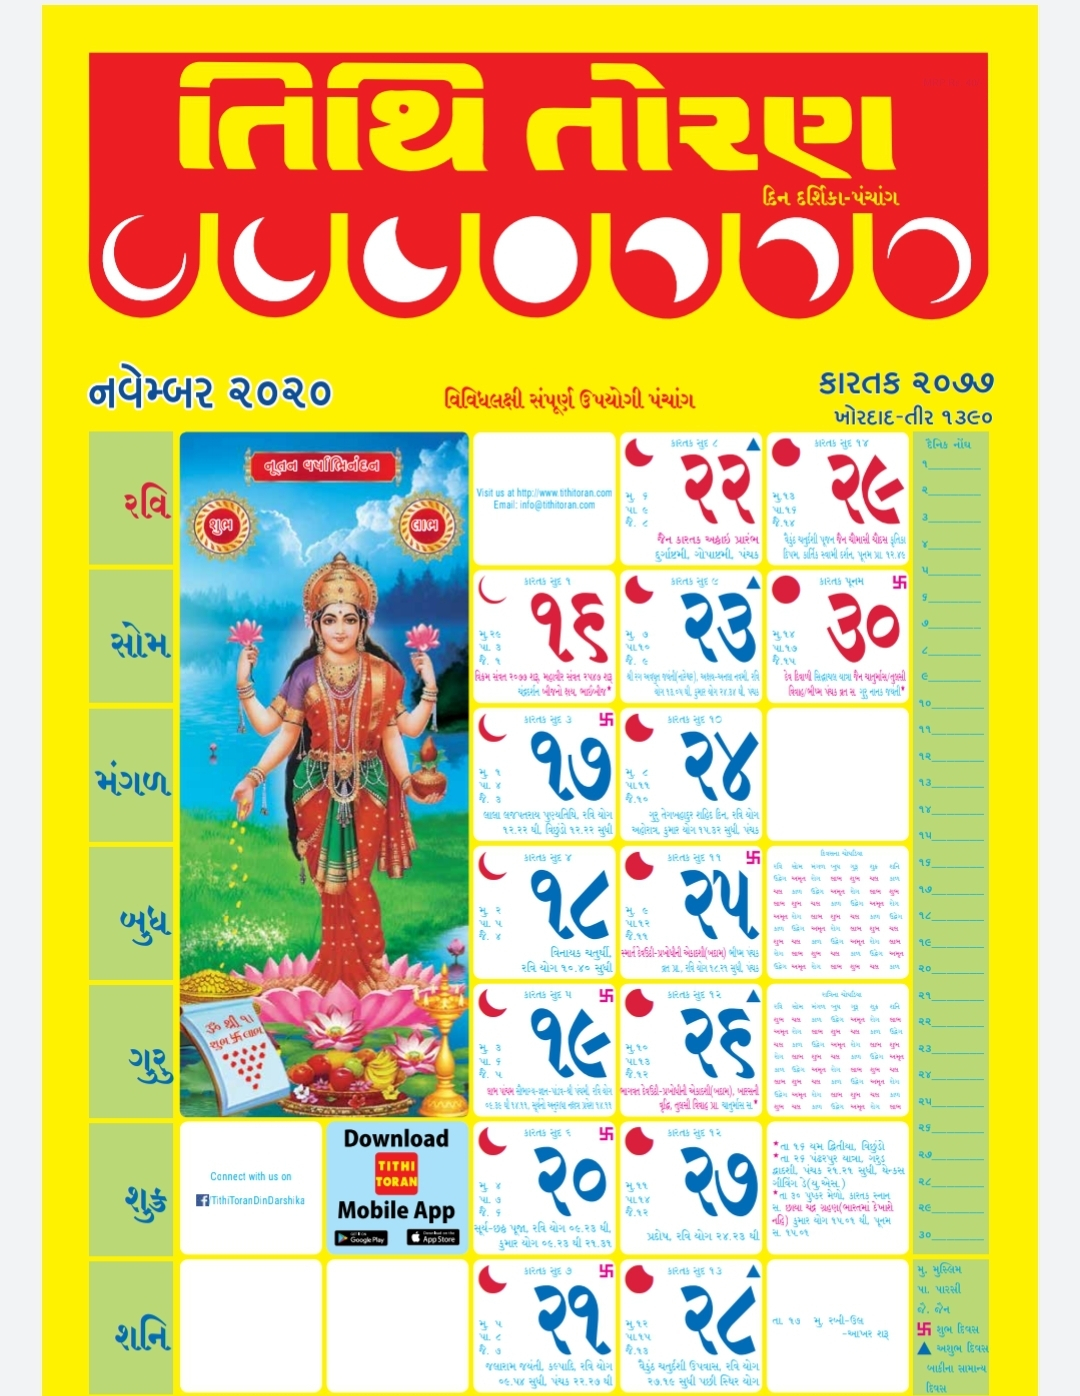 Calendar 2024 With Holidays Kalendar 2024 Hindu Festival With 2024